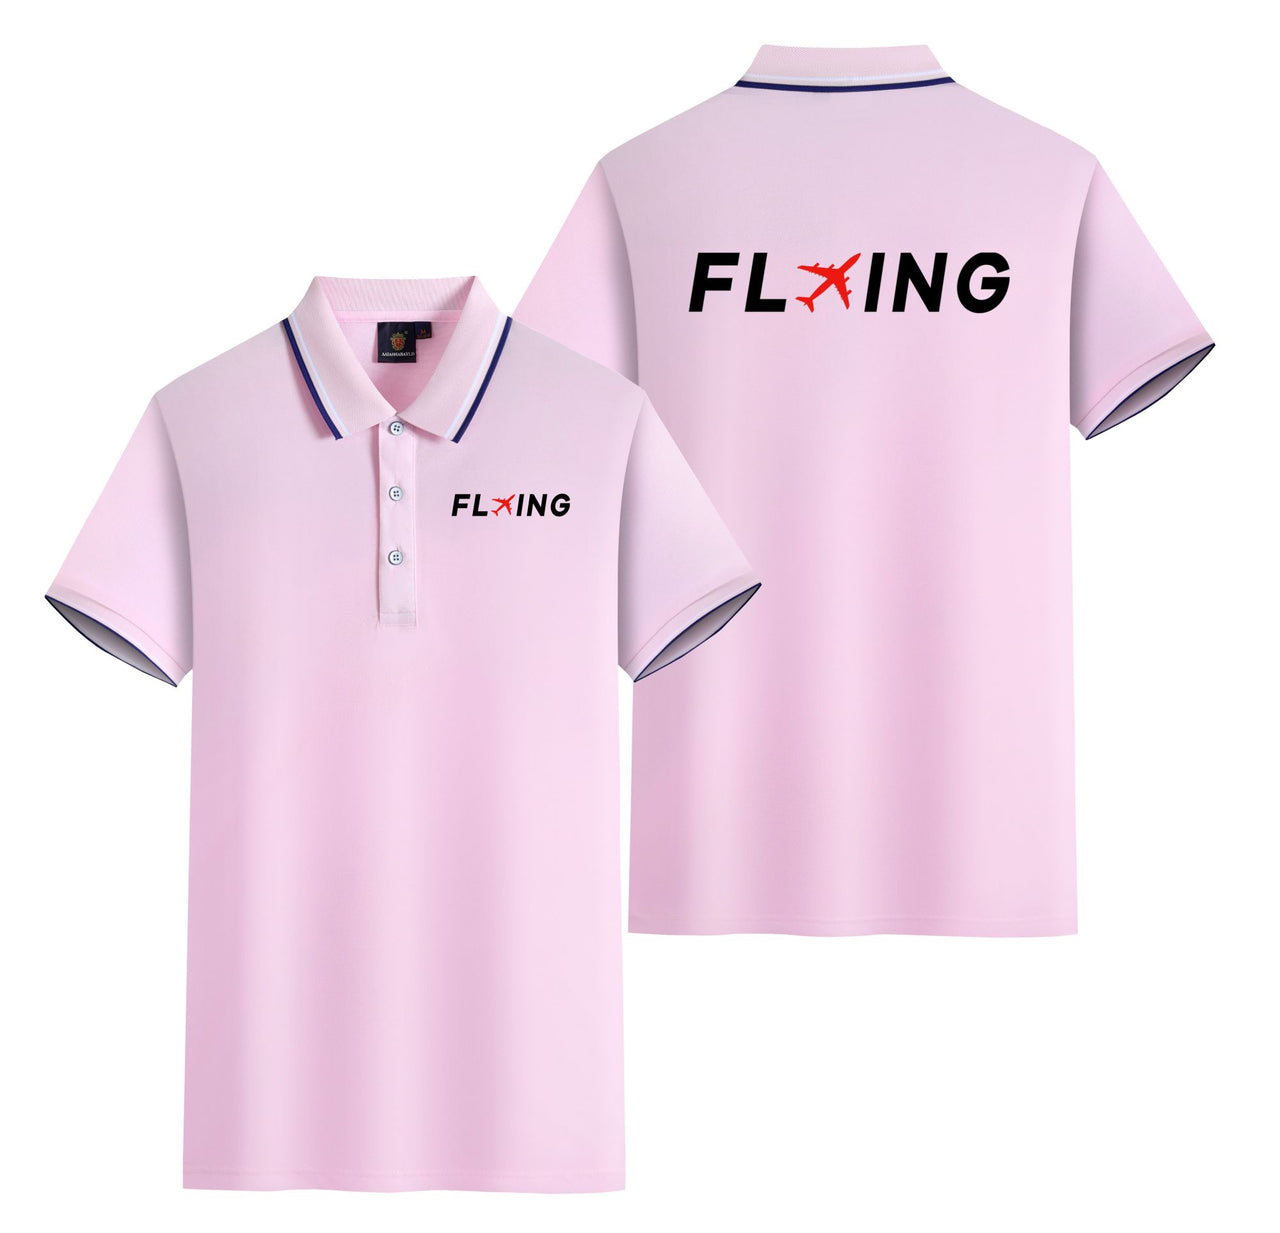 Flying Designed Stylish Polo T-Shirts (Double-Side)